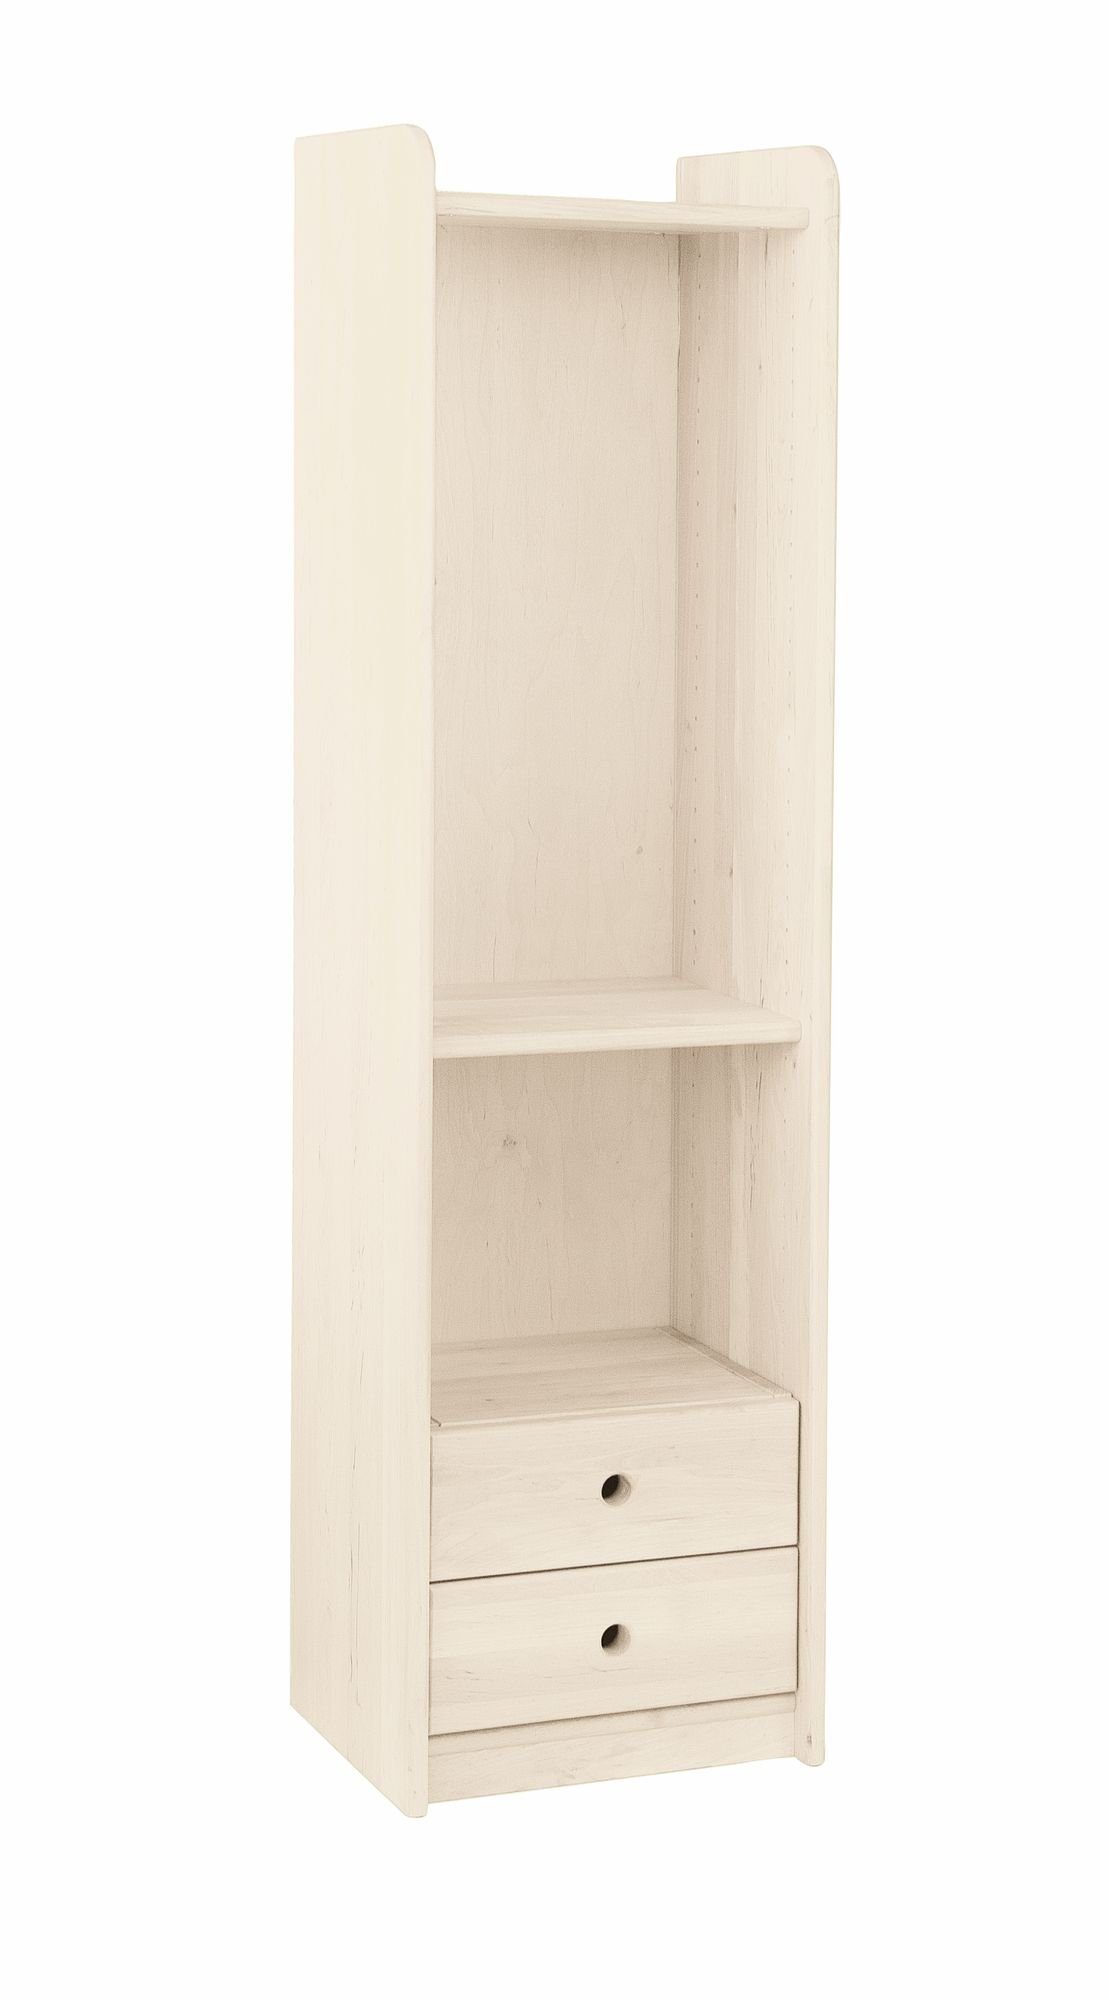 BioKinder - Das gesunde Kinderzimmer Standregal Lara, Regal / Bücherregal 160 cm mit Schubladenelement, Kiefer weiß